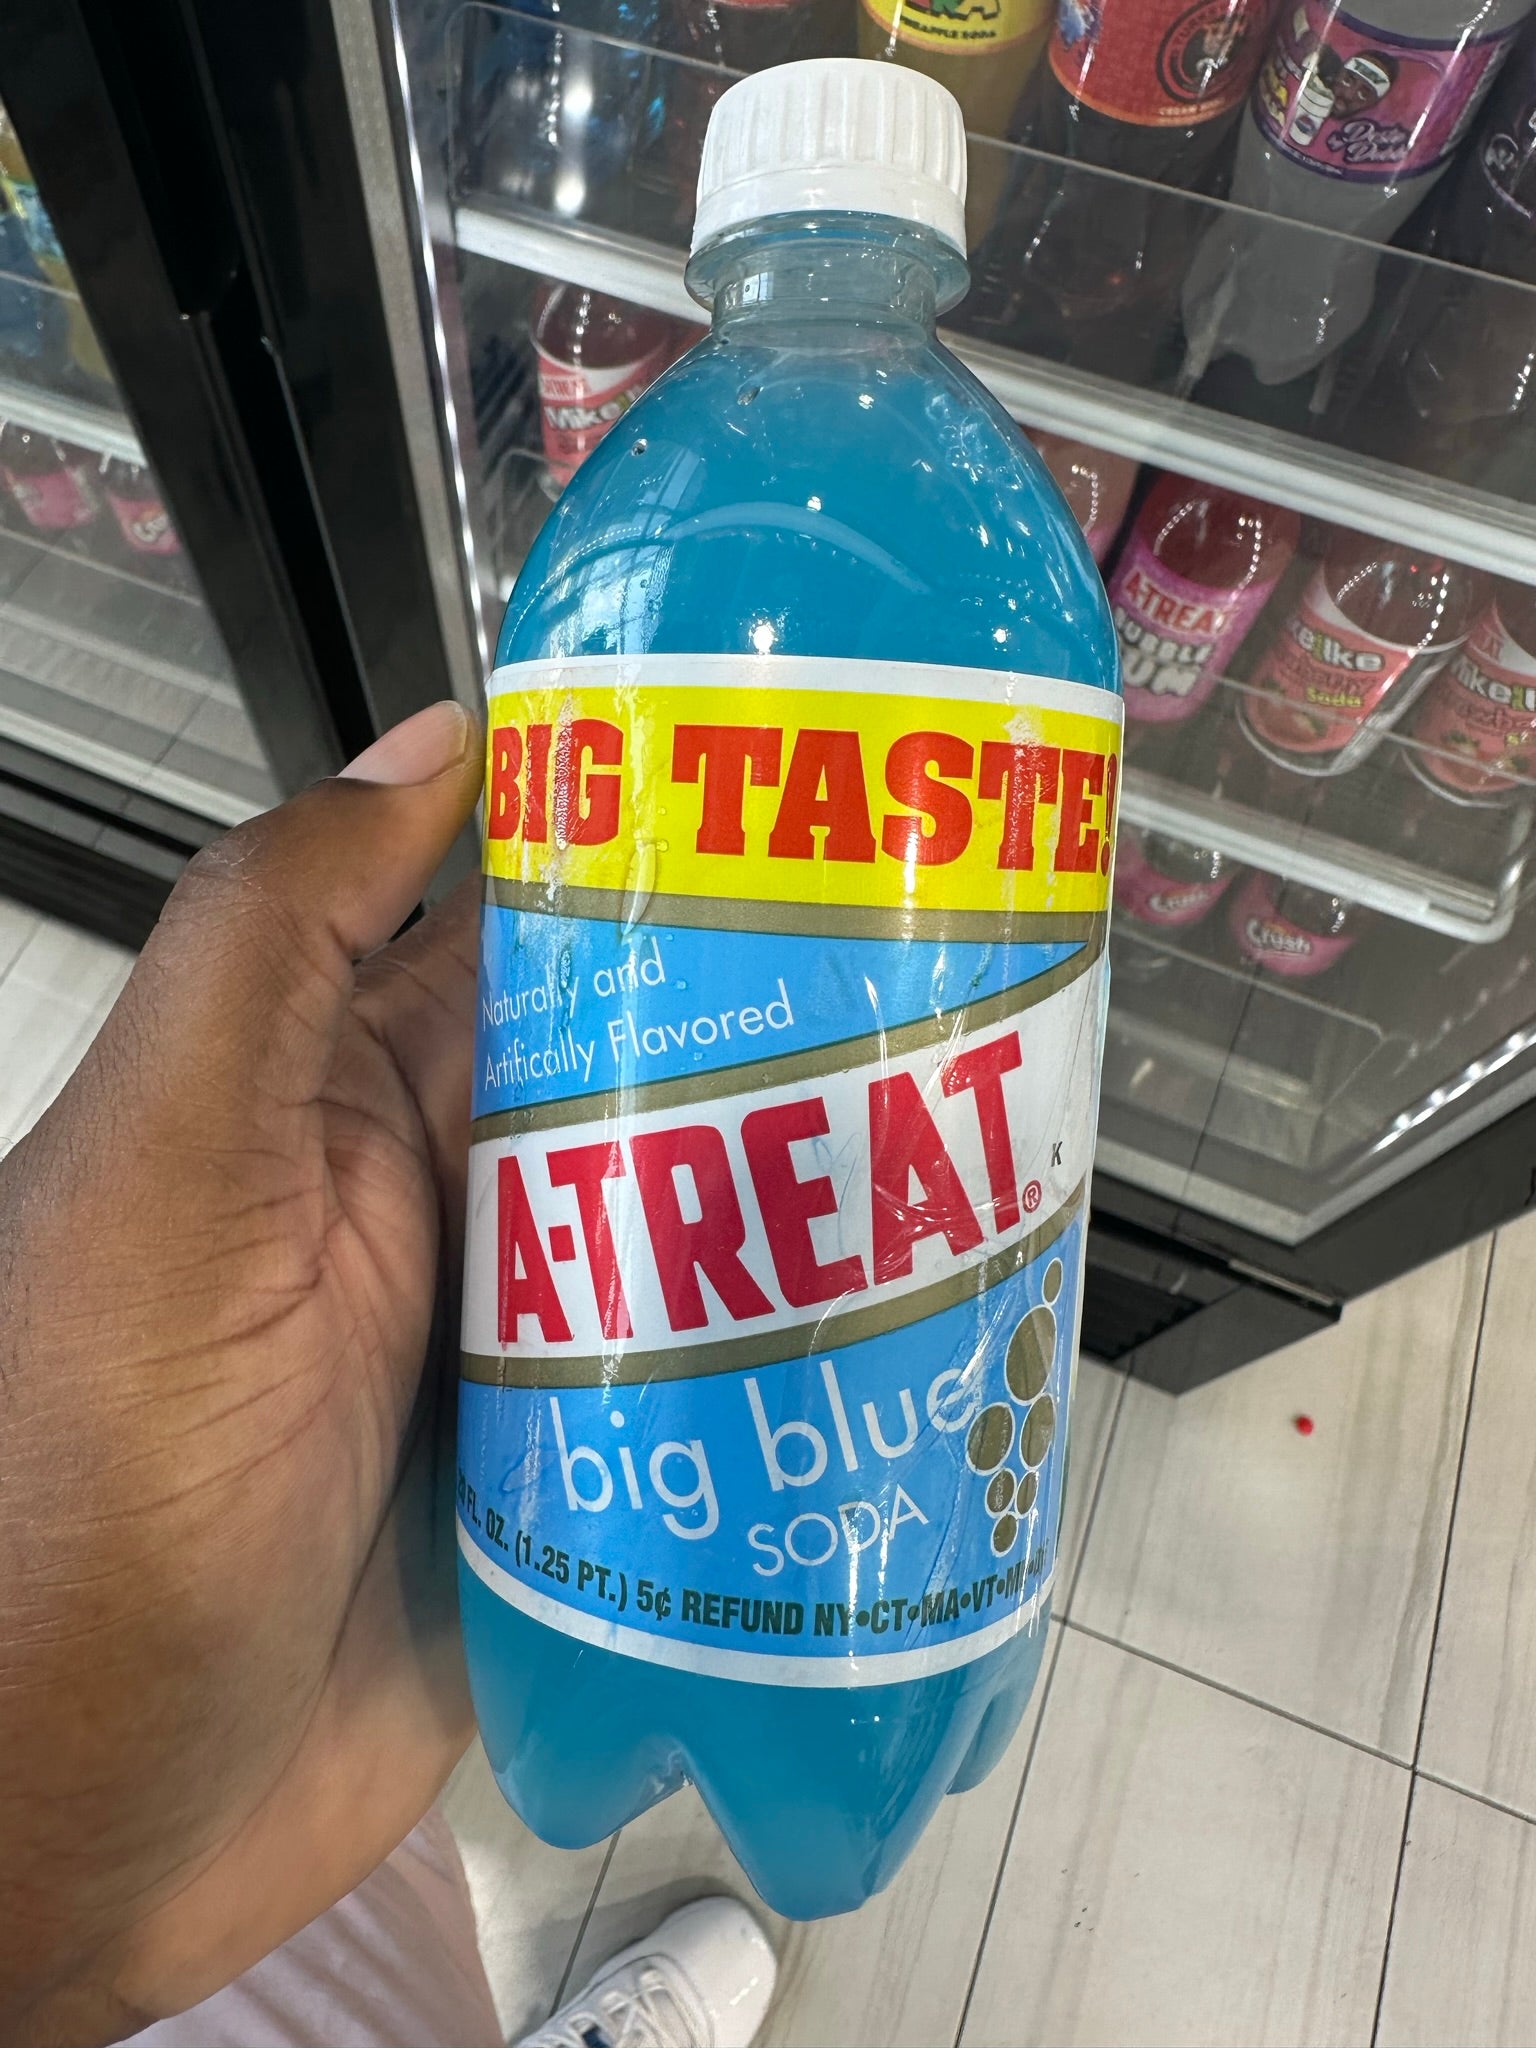 A-Treat Big Blue Soda